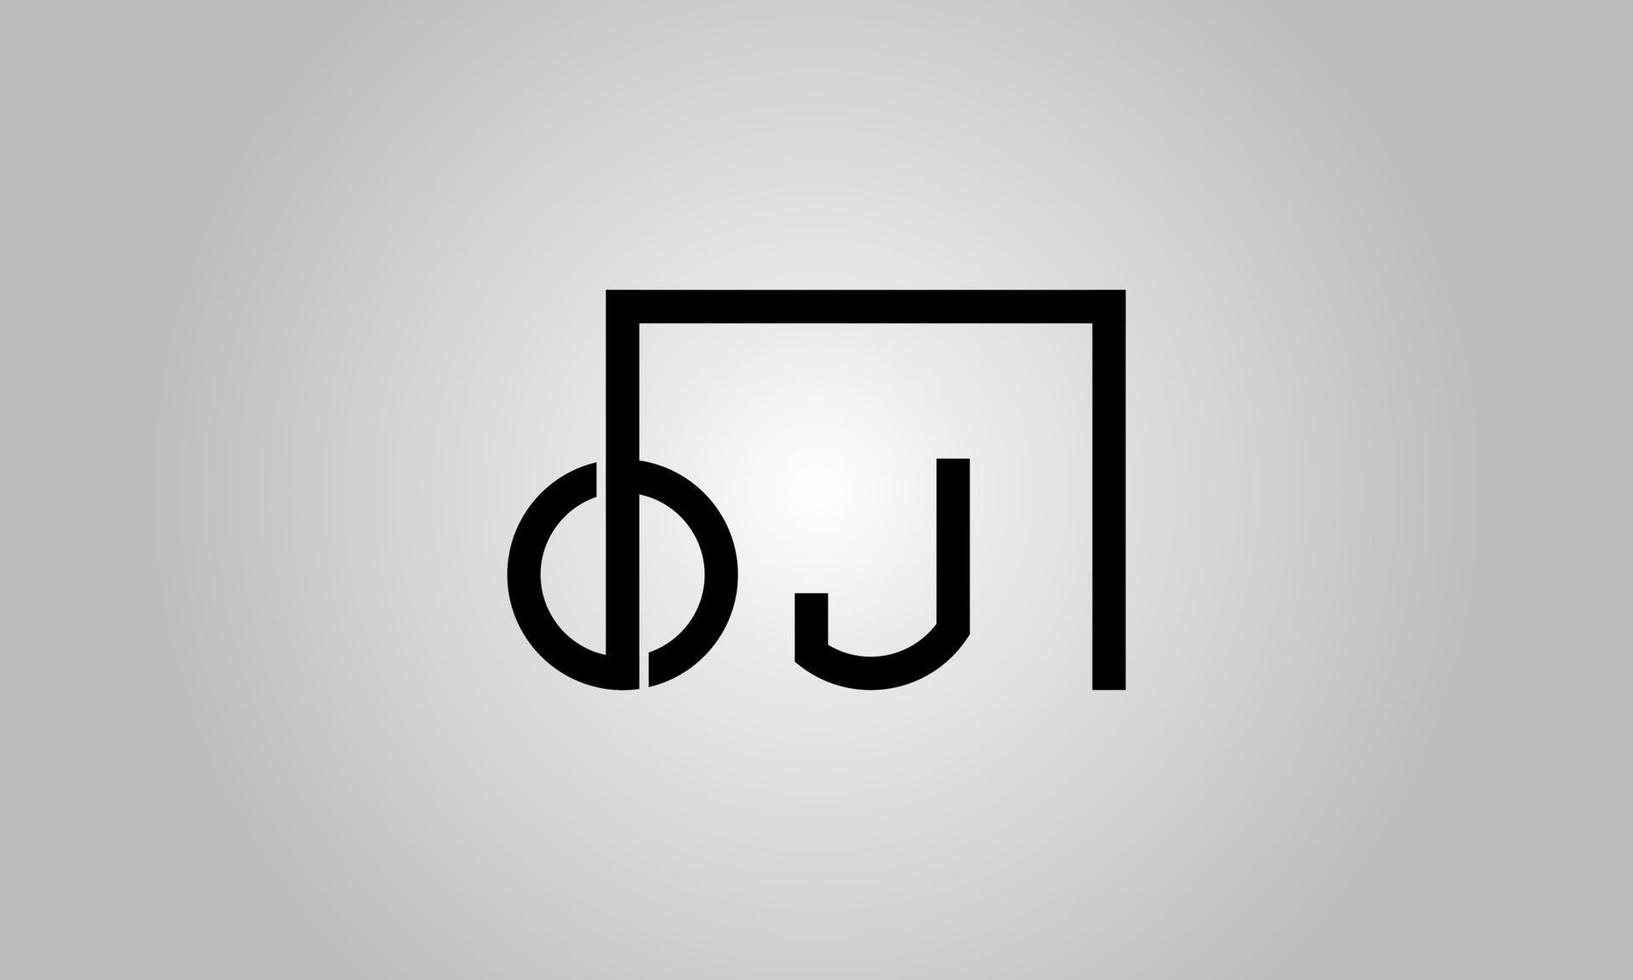 création de logo lettre oj. logo oj avec forme carrée dans le modèle de vecteur gratuit de vecteur de couleurs noires.